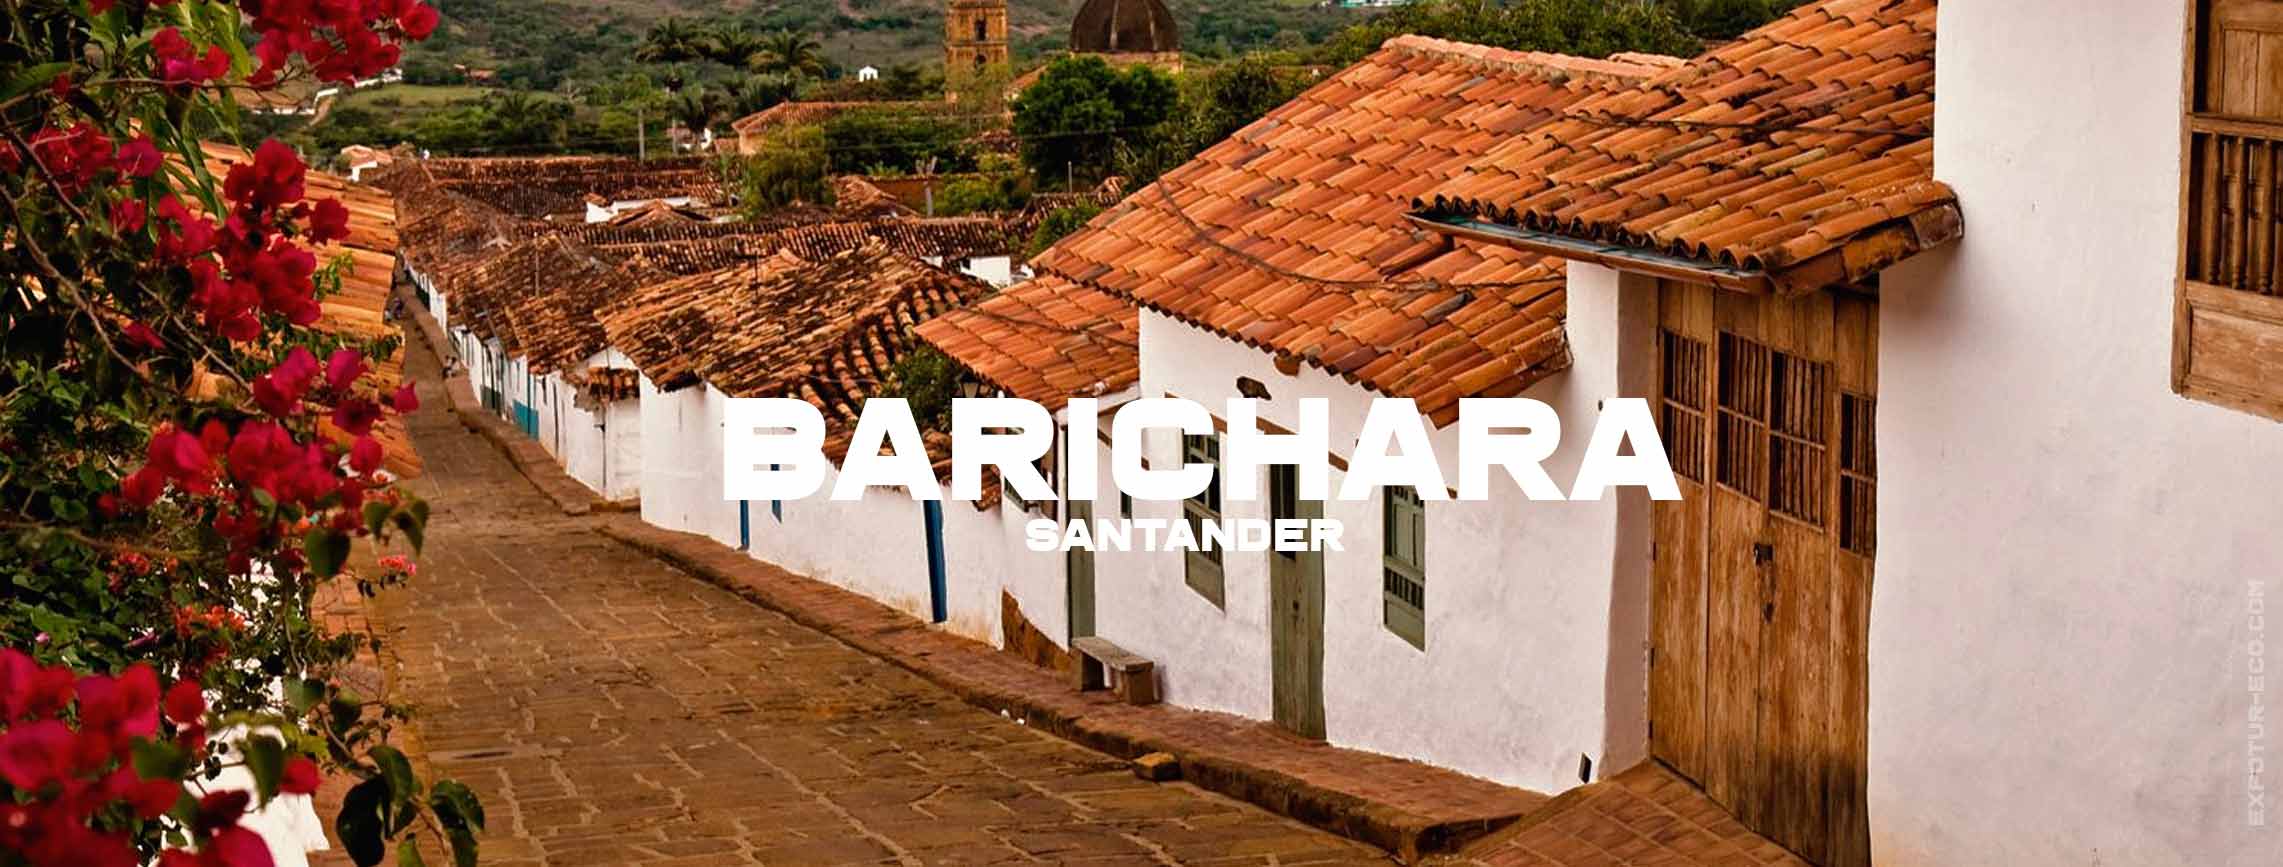 barichara-santander-blog-semana-santa-expotur-lugar-turistico-colombia Easter